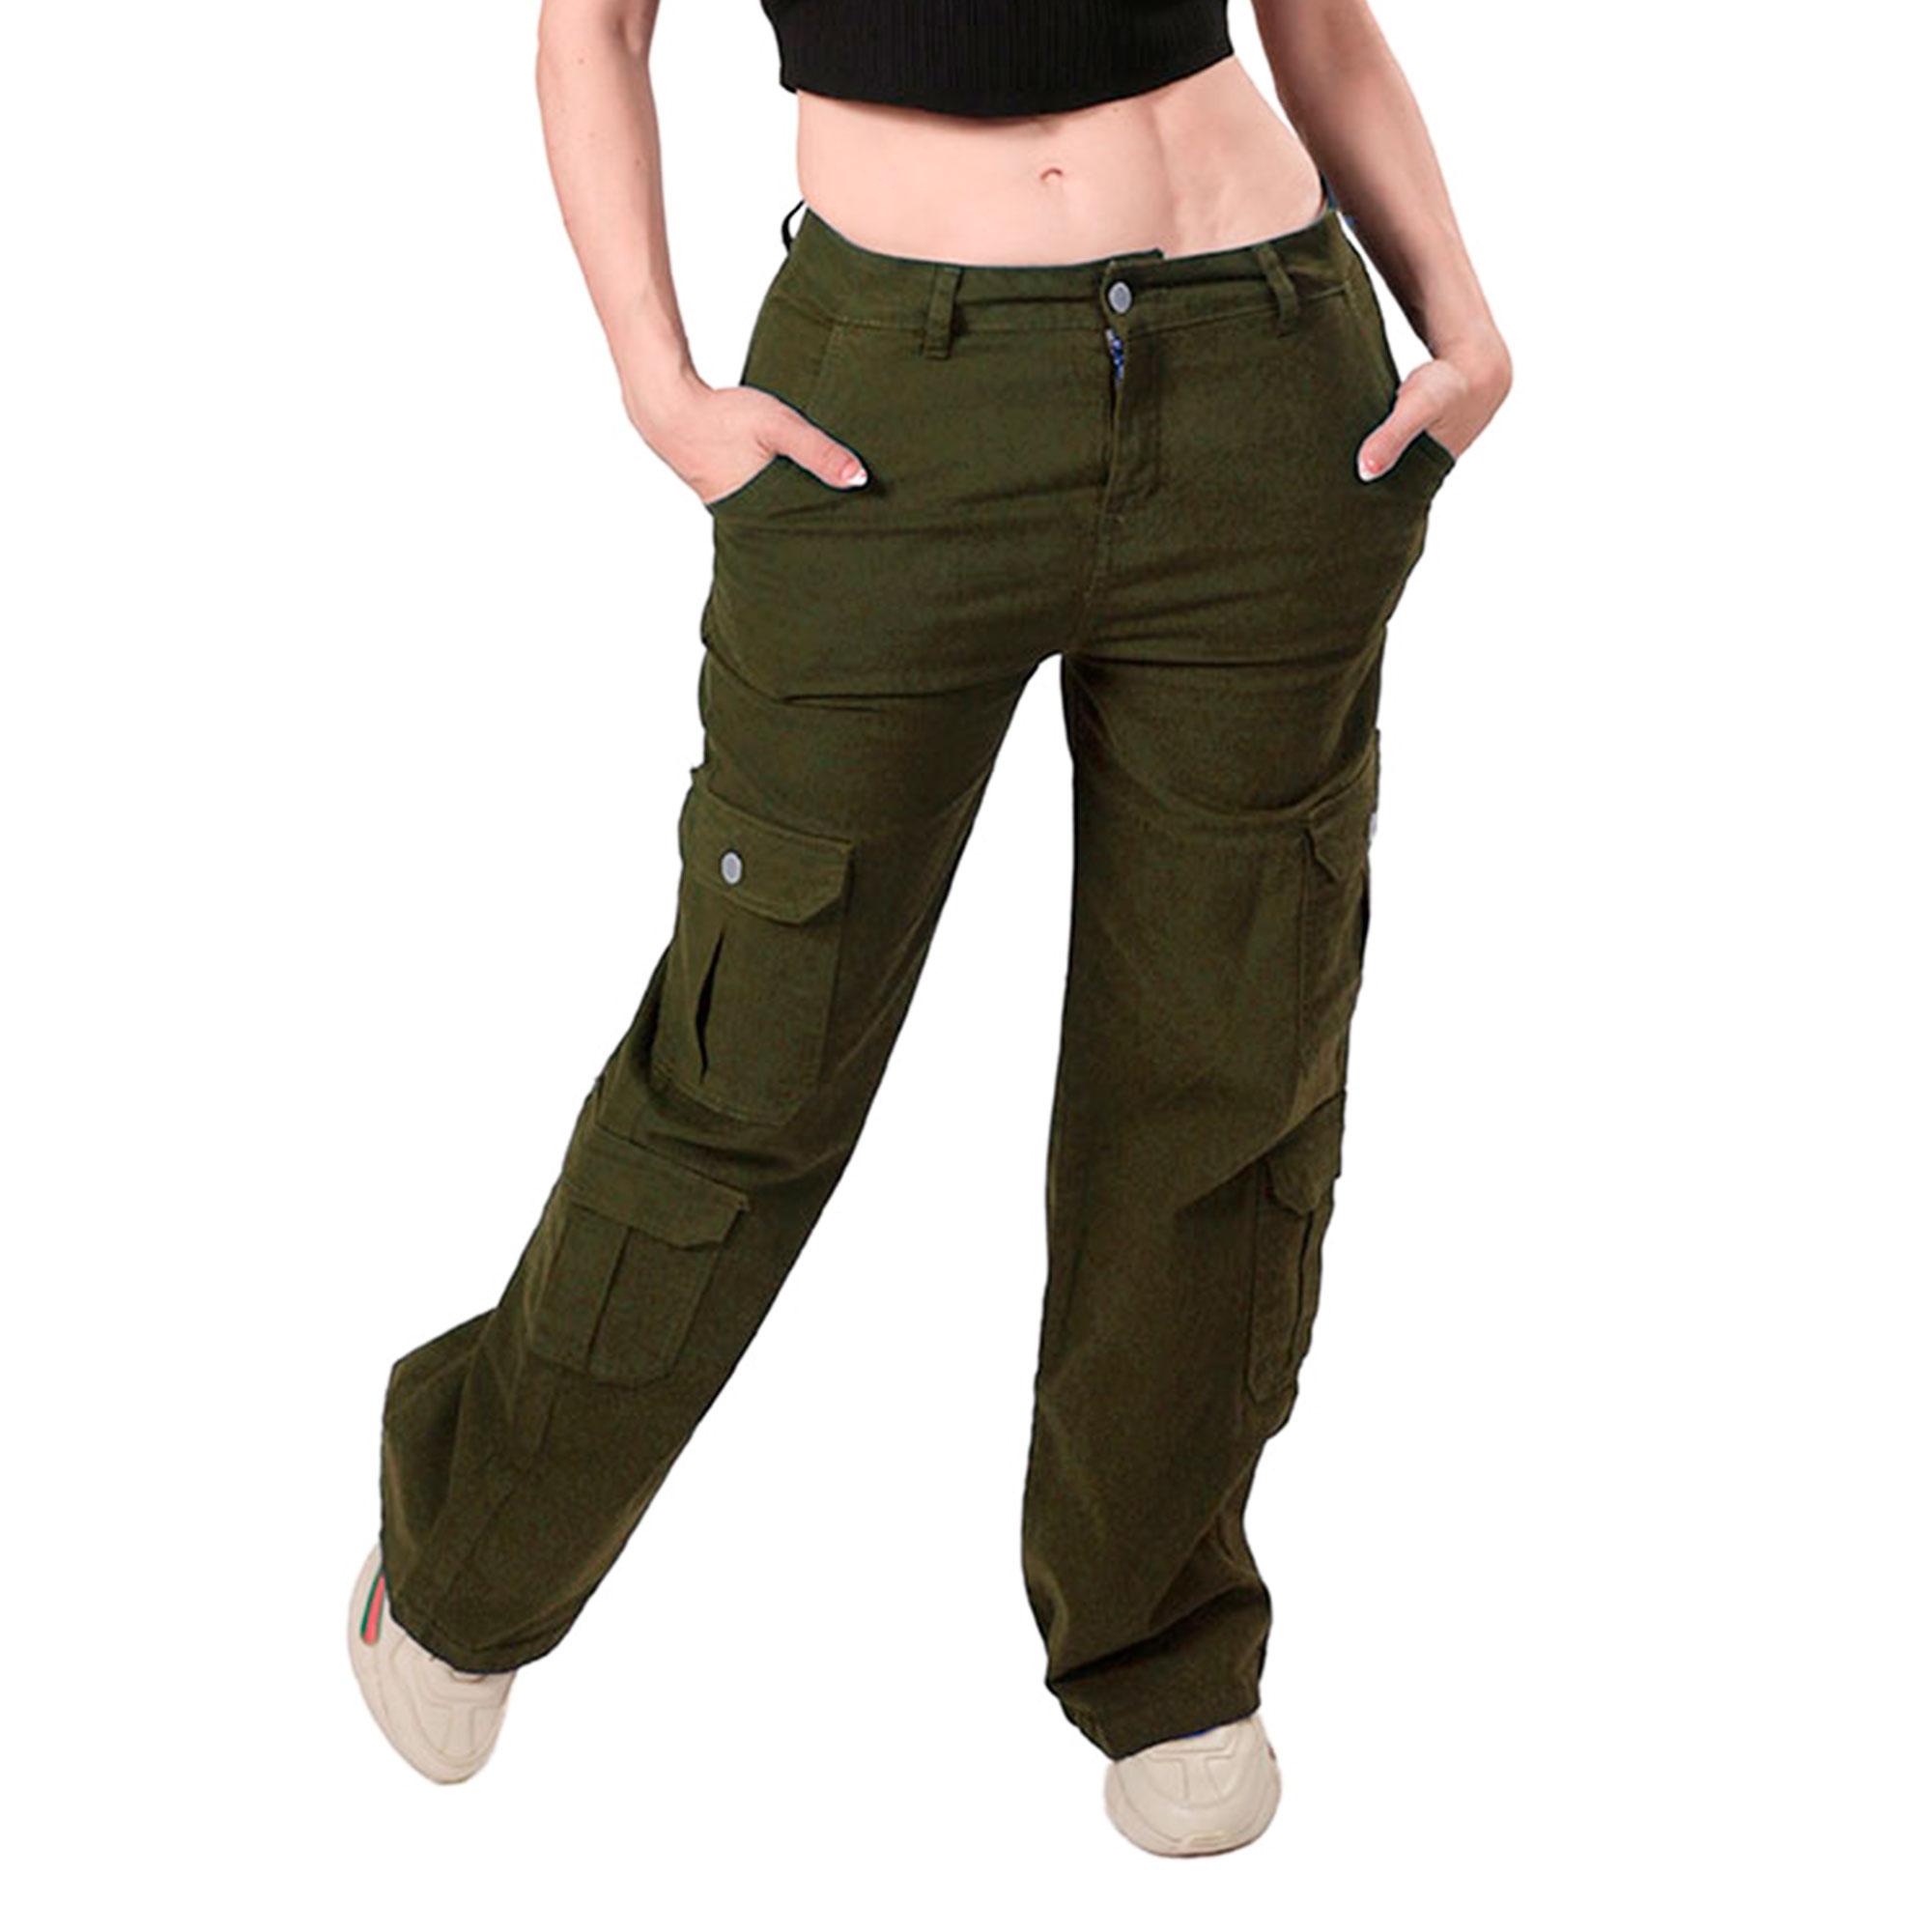 Pantalón Cargo Britos Jeans Mujer Verde Militar - Britos Jeans